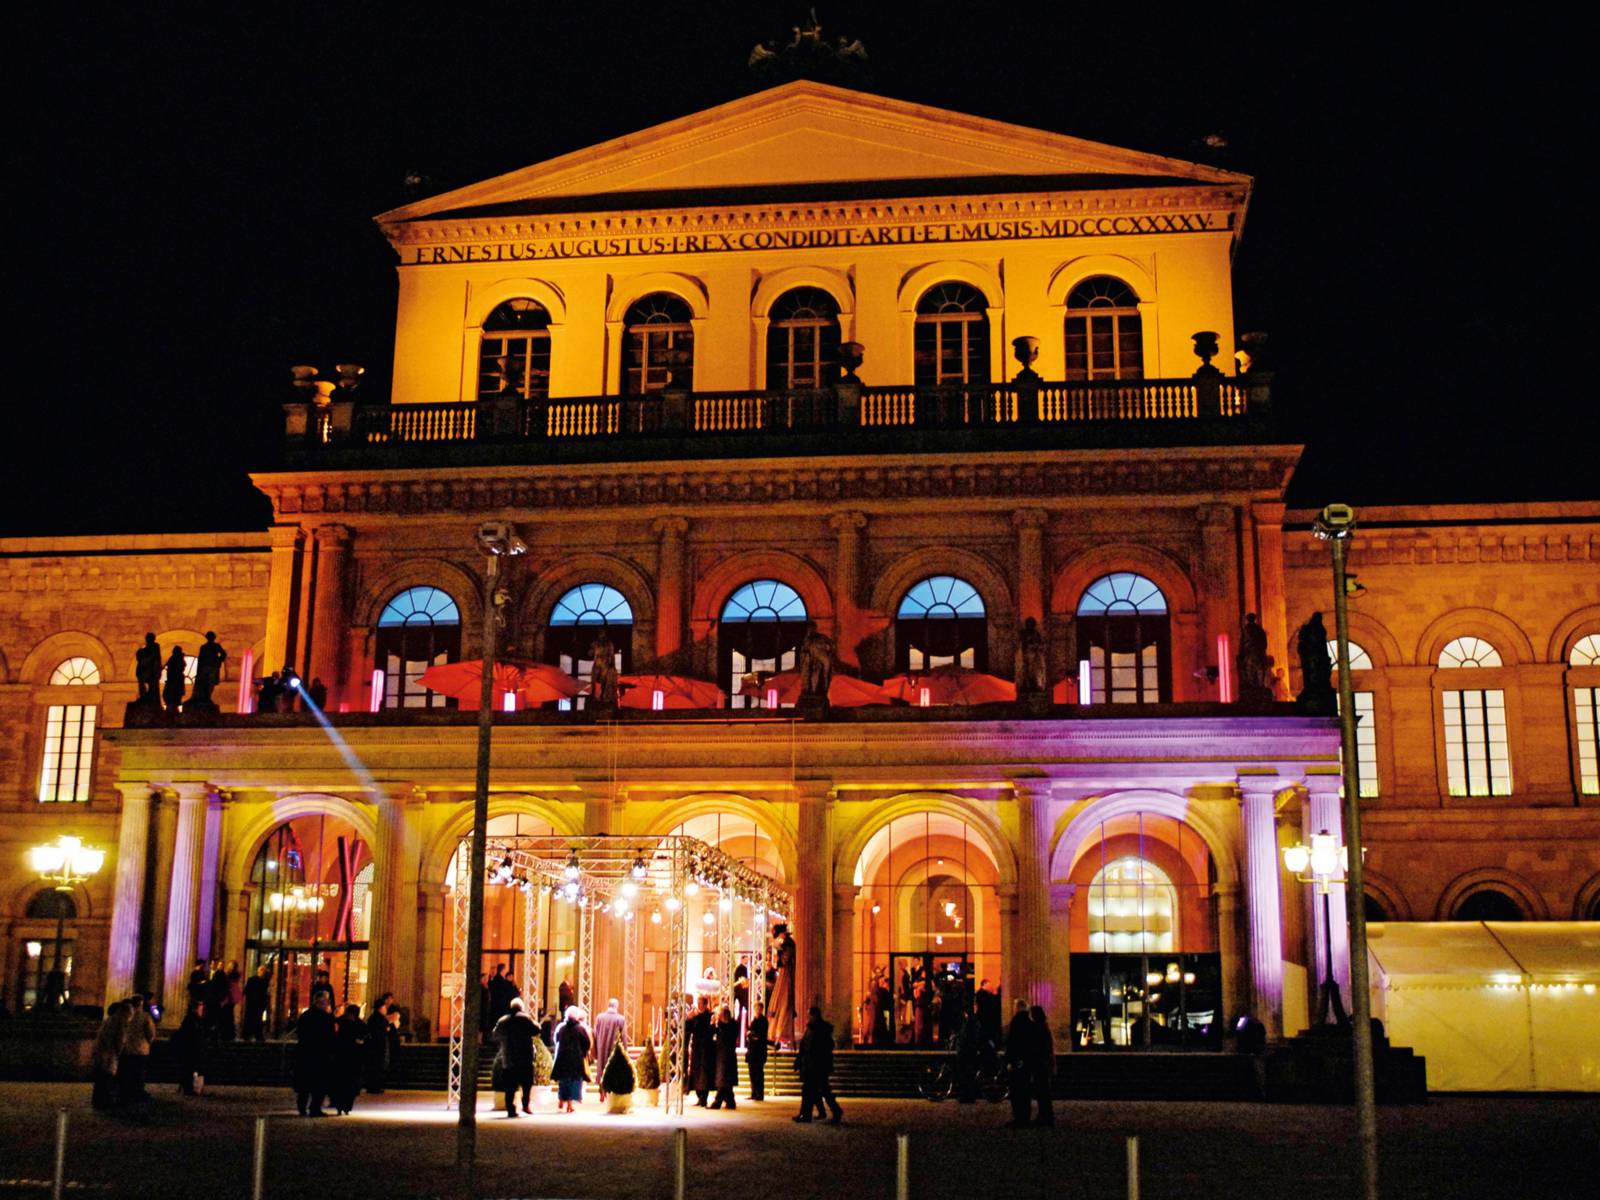 Das Opernhaus bei Nacht mit bunten Lichtern angestrahlt